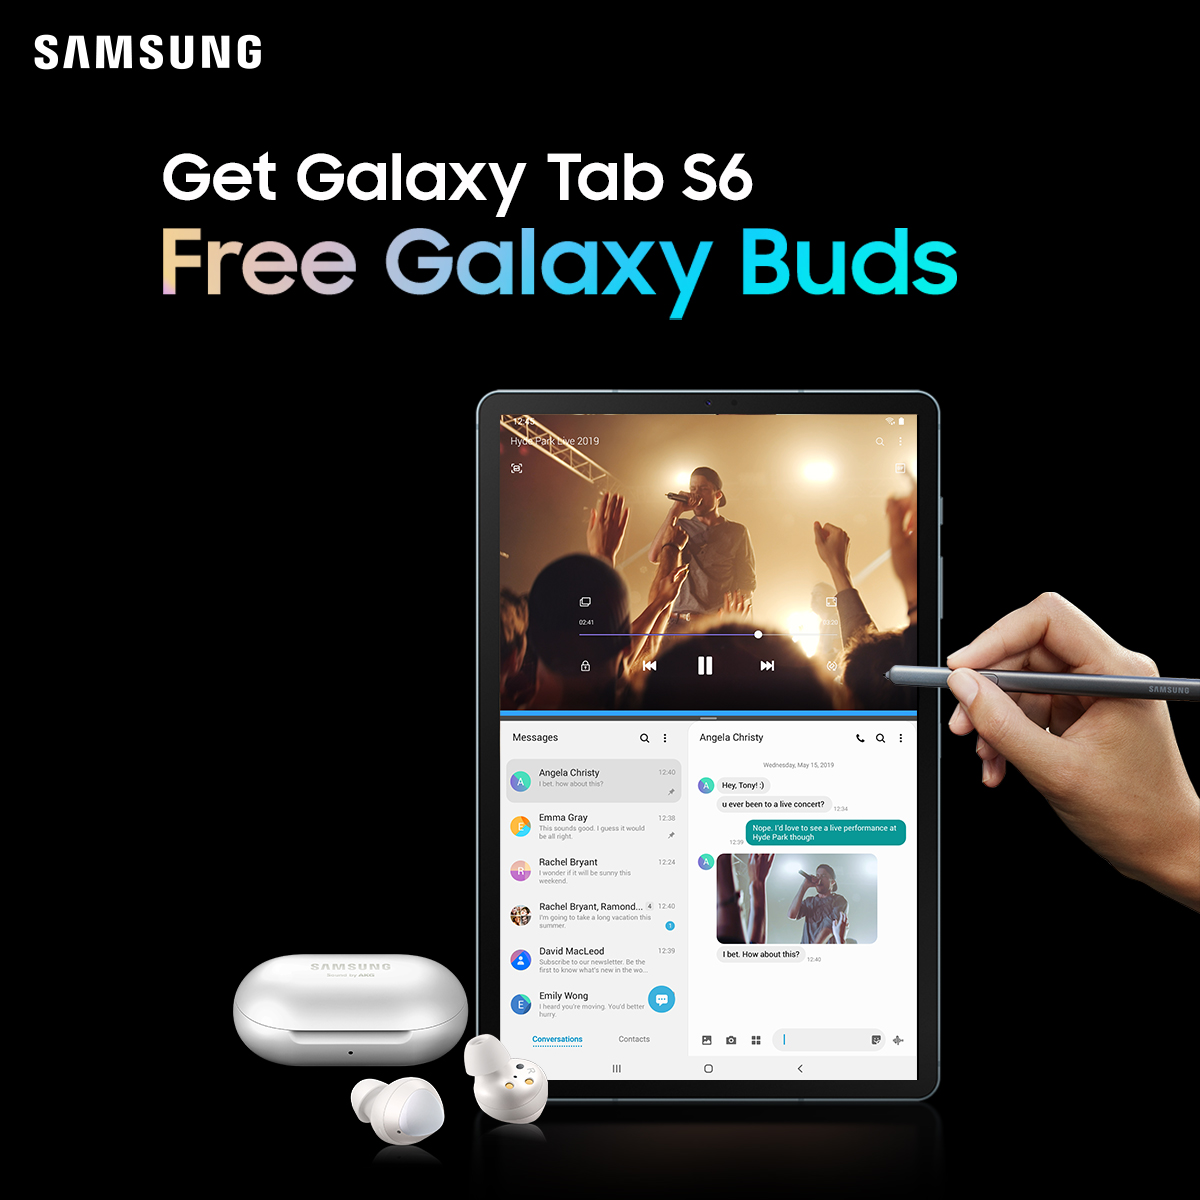 Galaxy Tab S6 Raya Promotion